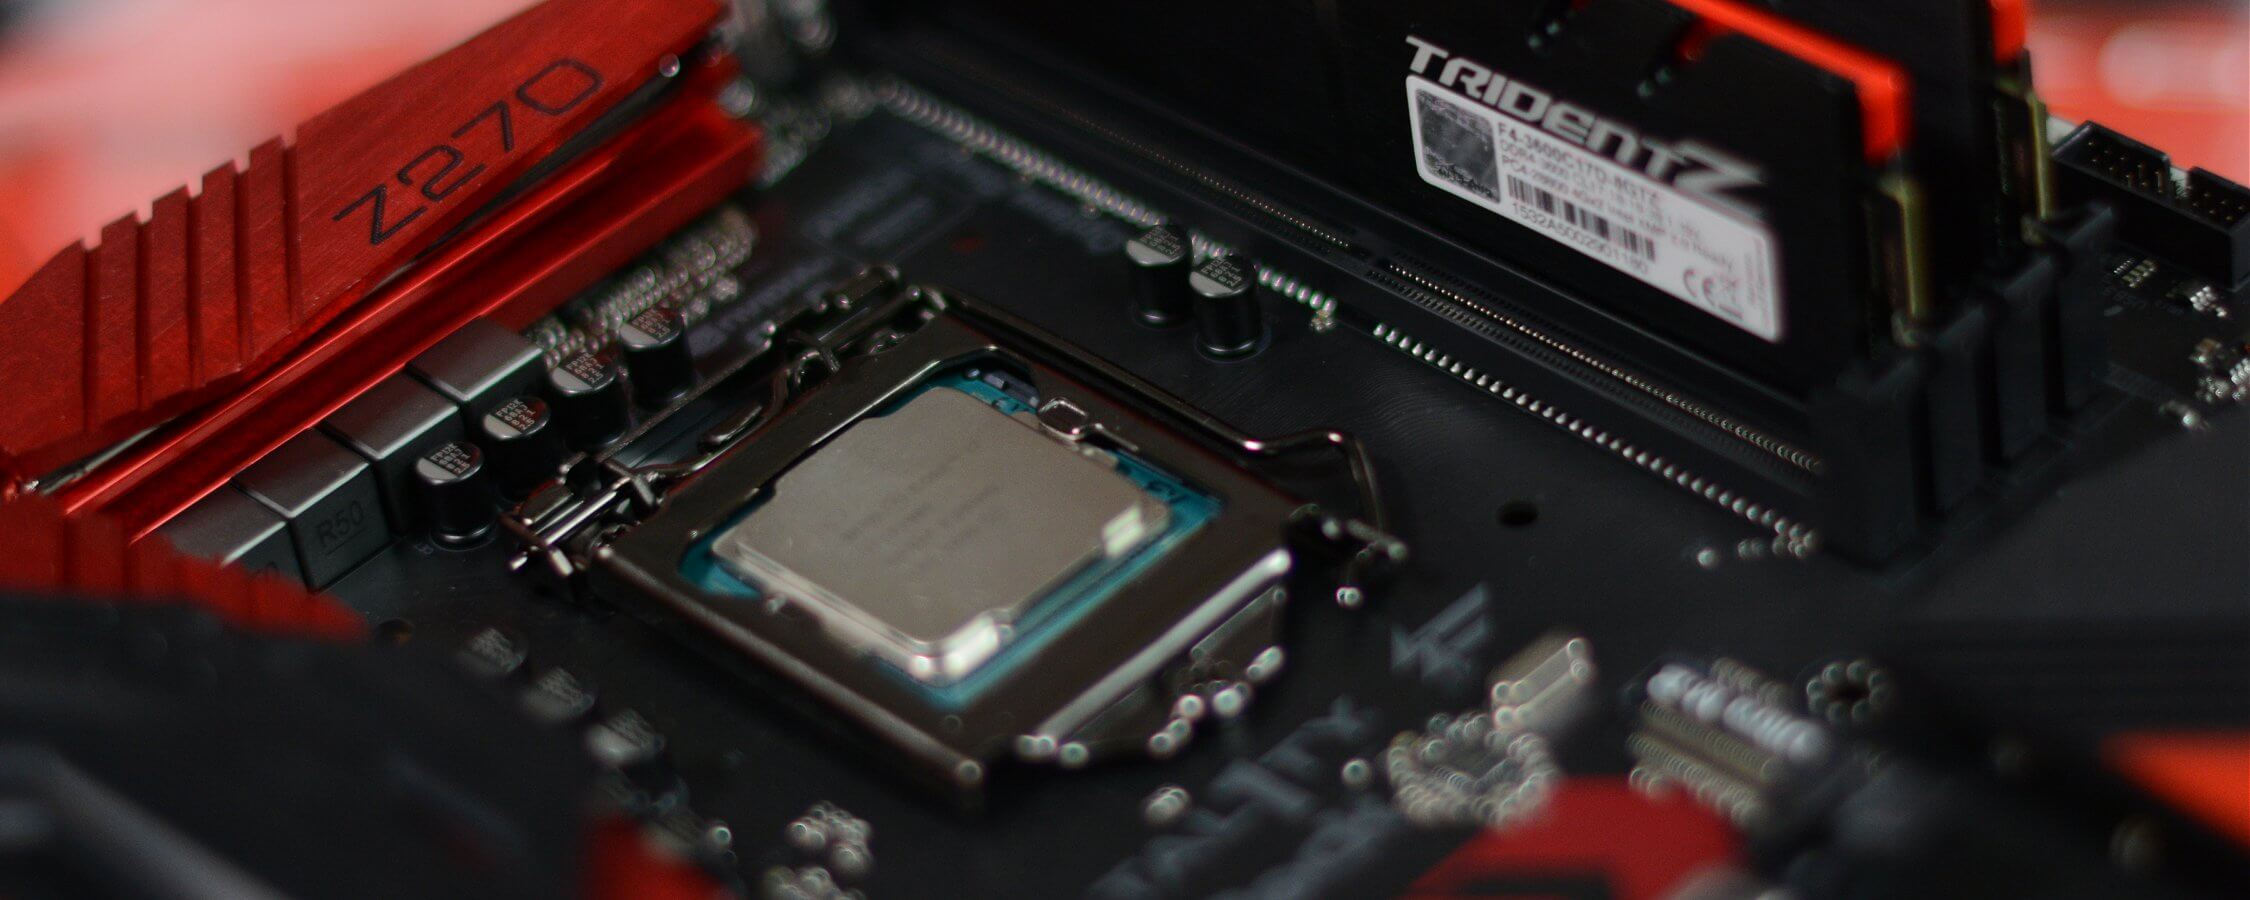 بعد ذلك بعامين: AMD Ryzen 7 1800X مقابل Intel Core i7-7700K 30